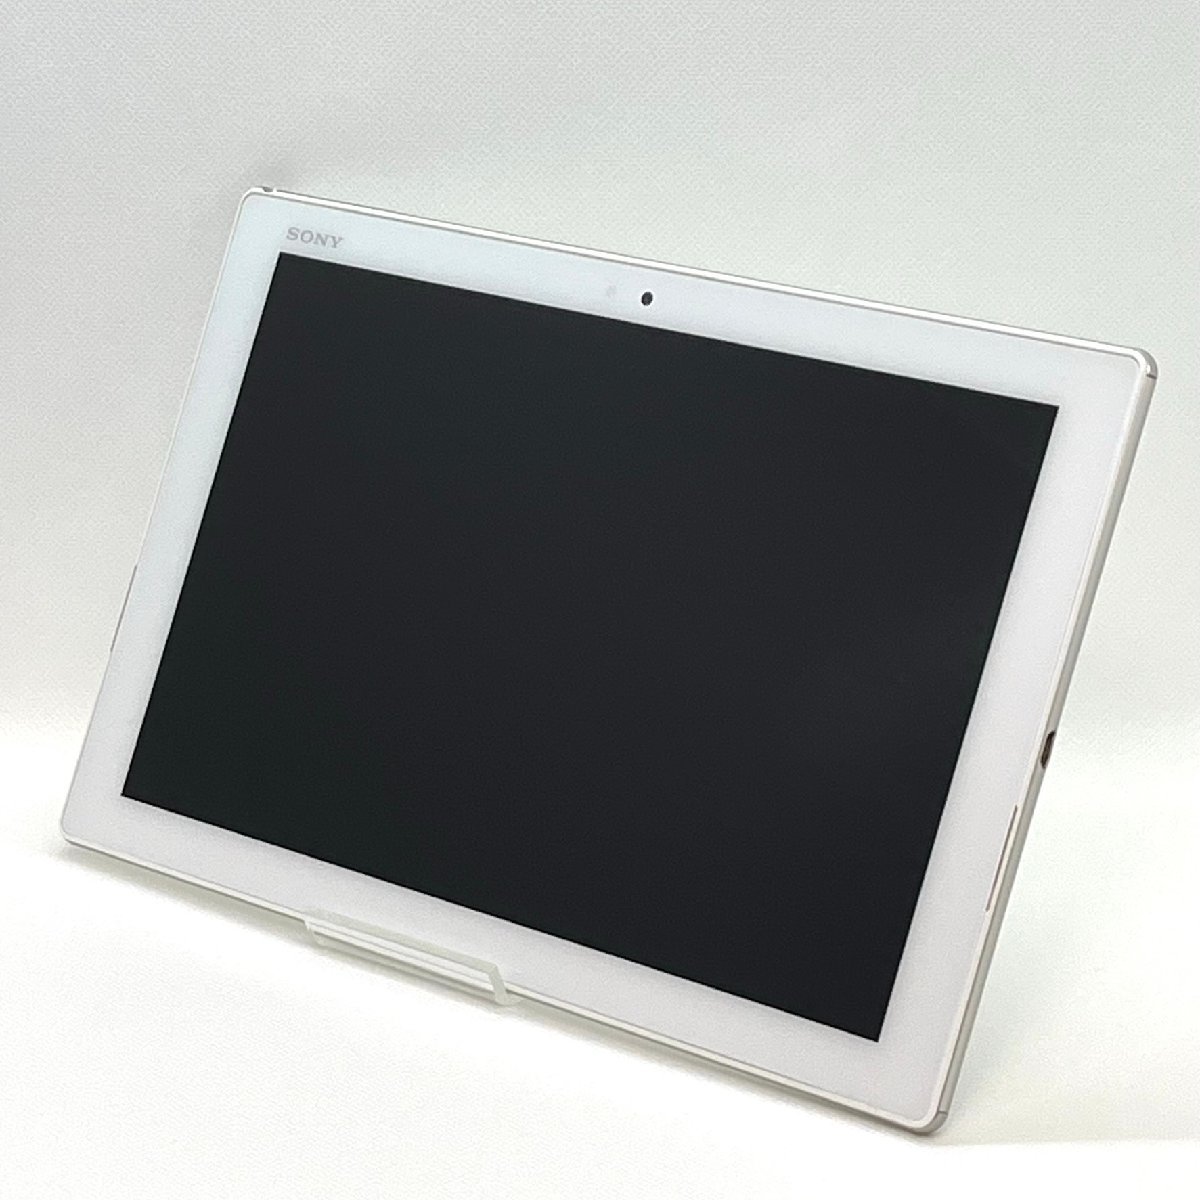 美品 Xperia Z4 Tablet SOT31 ホワイト au SIMロック解除済み 32GB バージョン7.0 白ロム SO-05G同型 タブレット本体 送料無料 H05_画像3